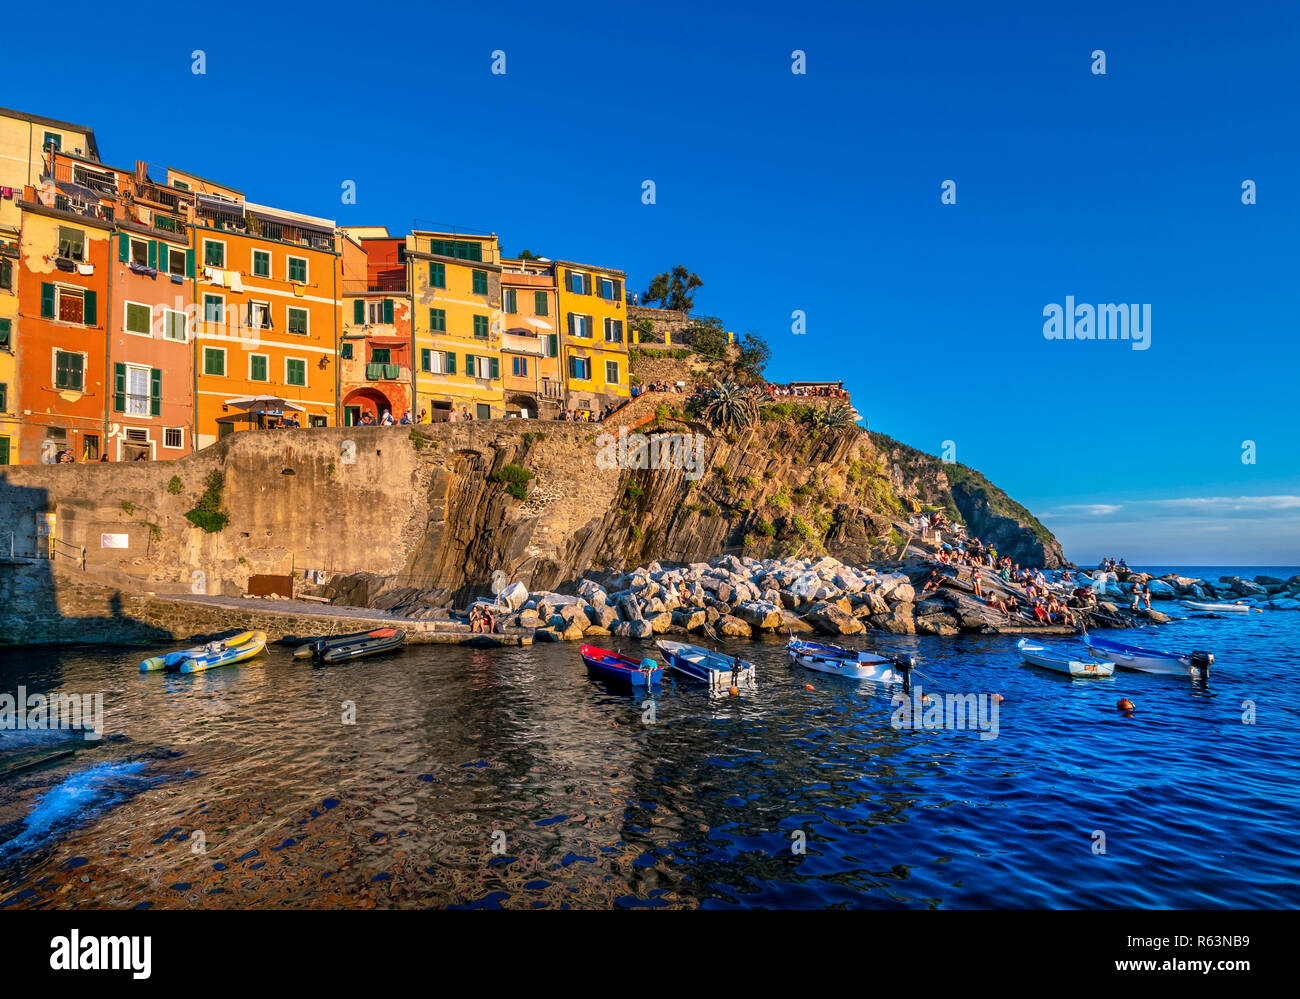 Town view with harbor and colorful houses, Riomaggiore, Cinque Terre, La Spezia, Liguria, Italy, Europe Stock Photo